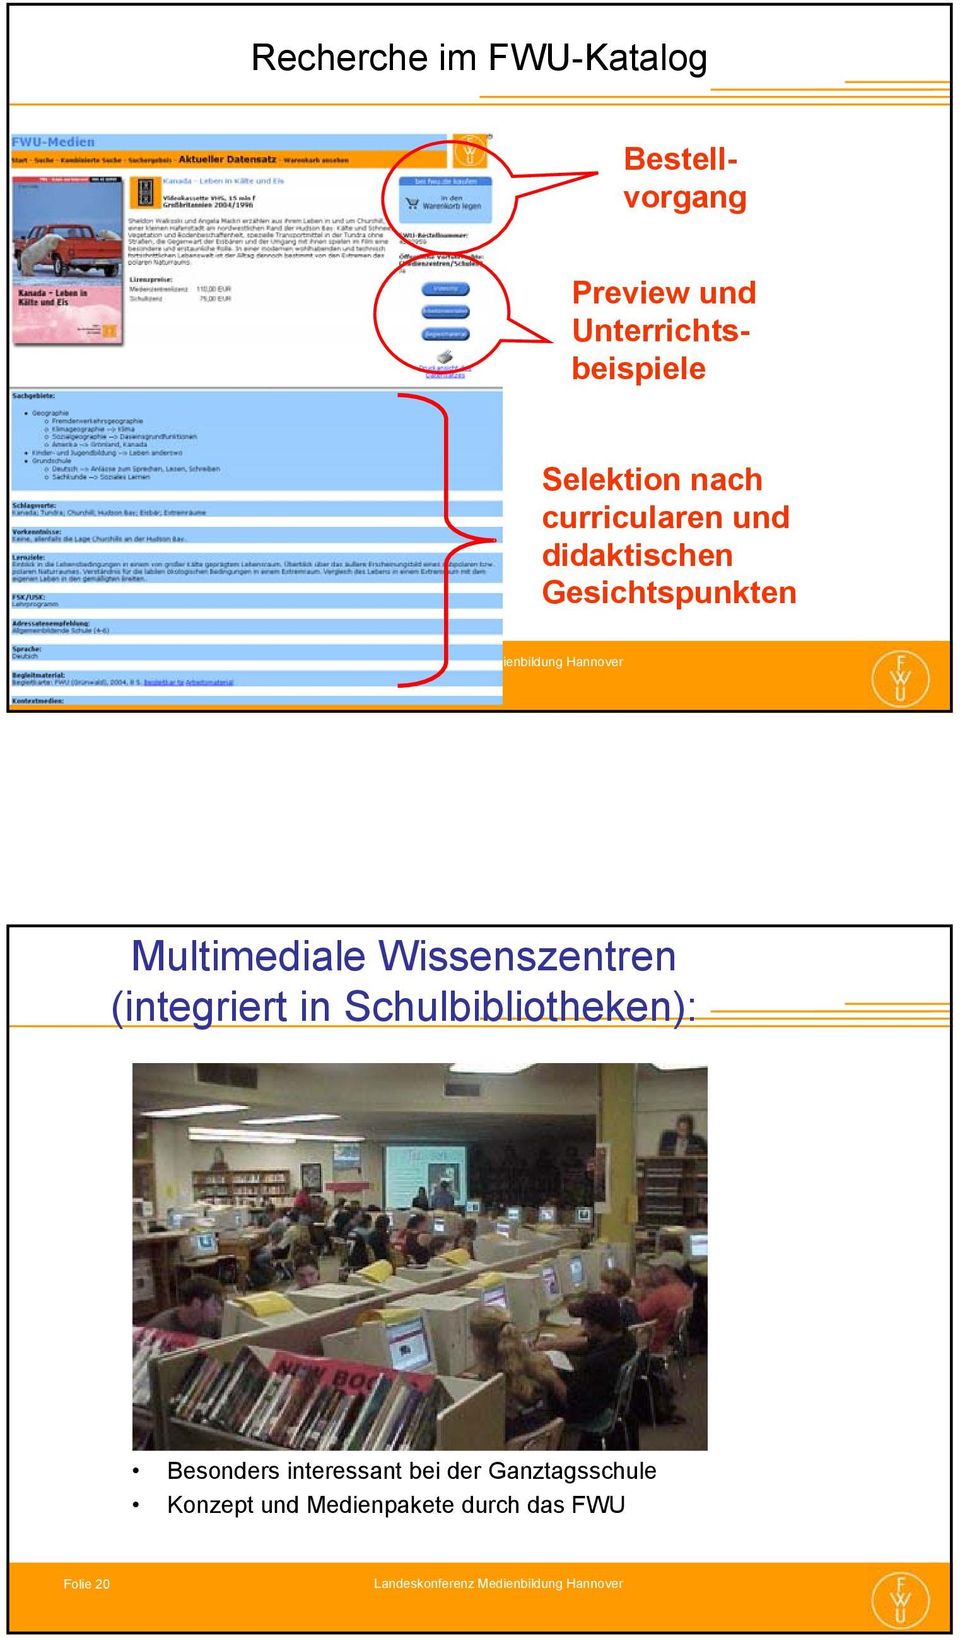 Multimediale Wissenszentren (integriert in Schulbibliotheken): Besonders